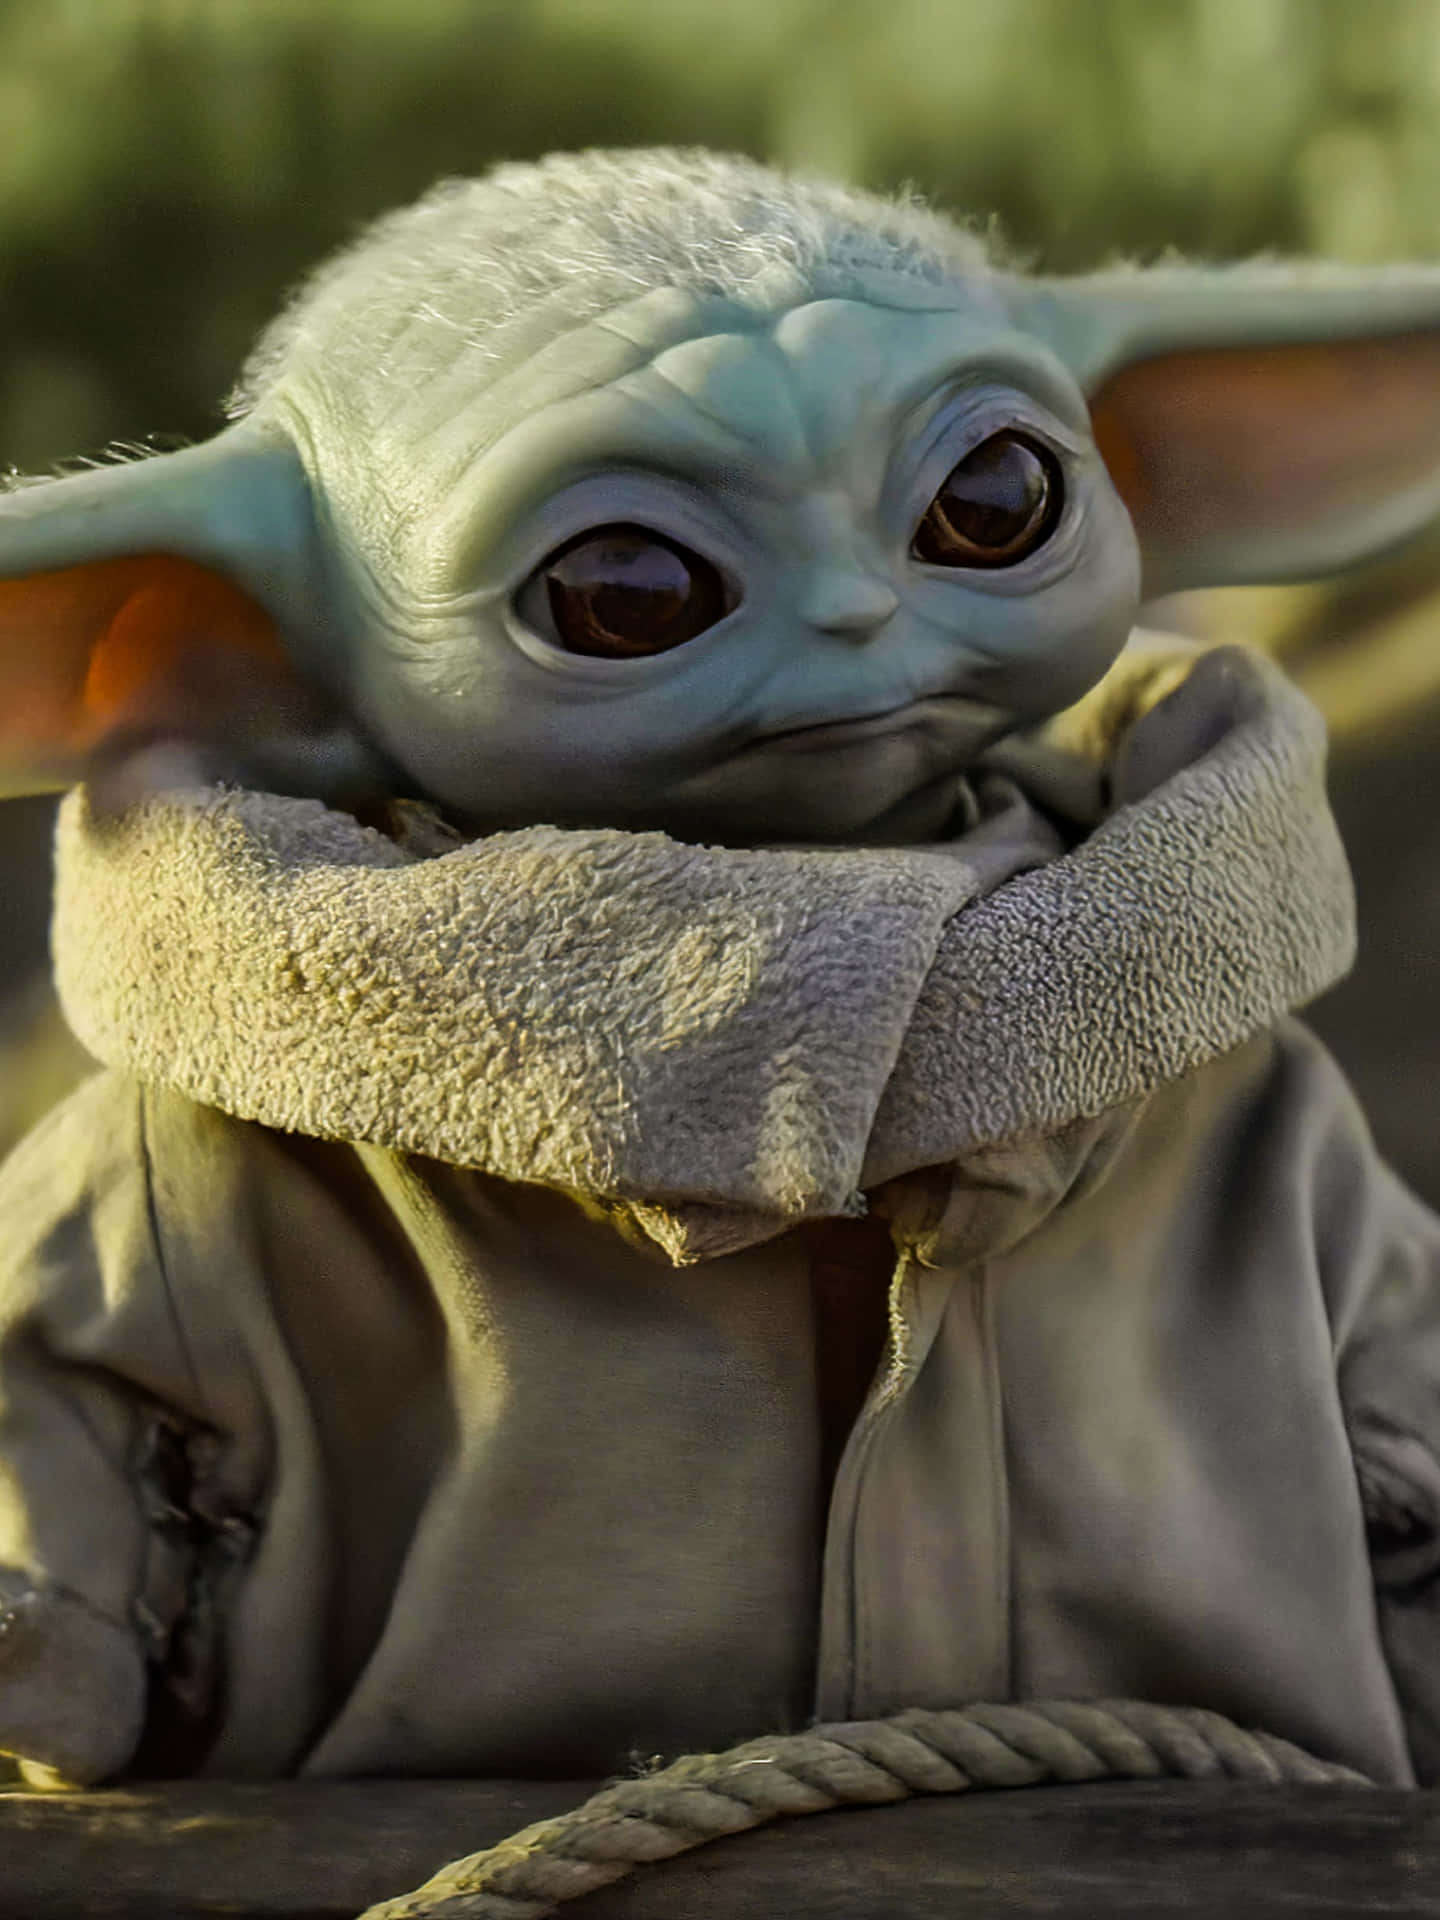 Preparatia Vivere L'adorabilità Di Baby Yoda Con Questo Nuovo Incredibile Telefono! Sfondo